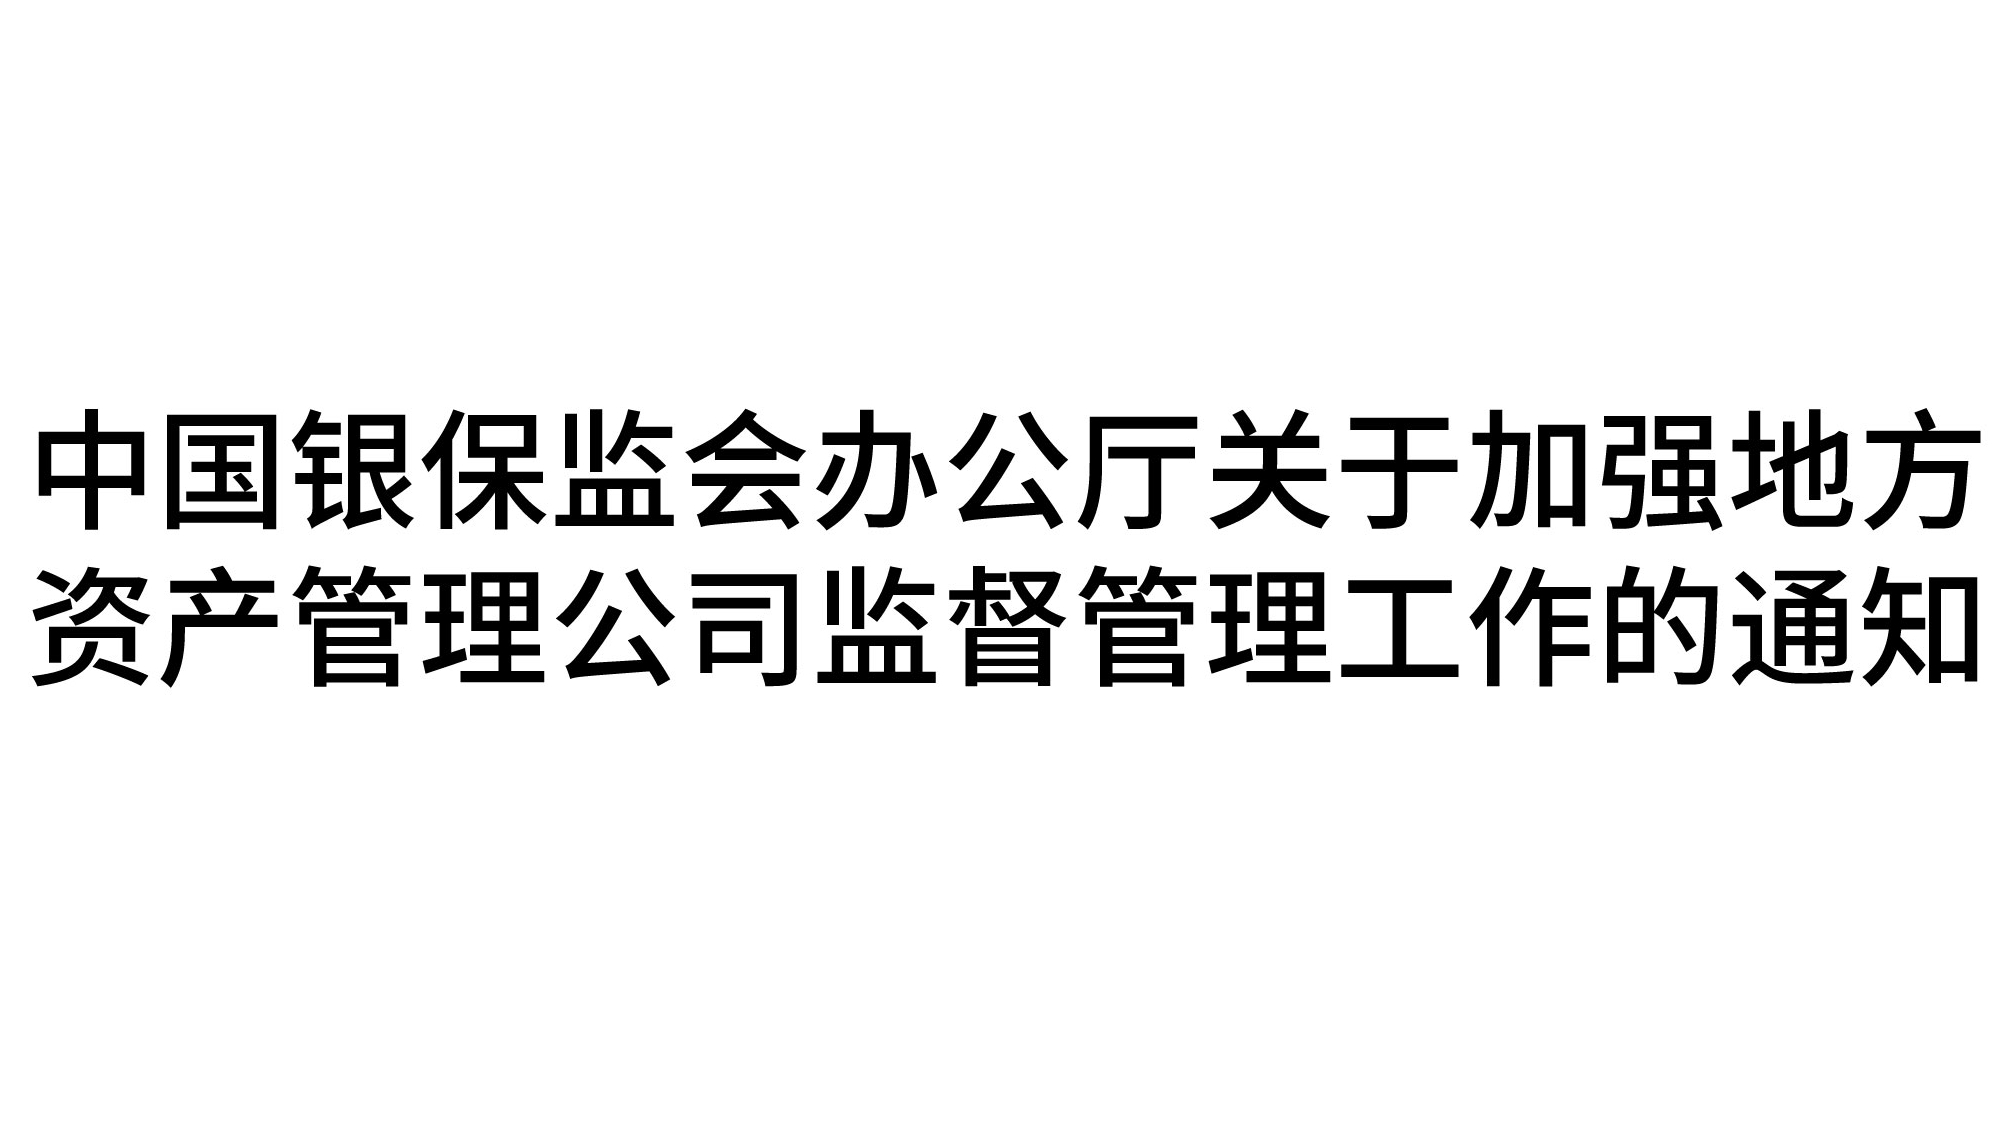 中国银保监会办公厅关于加强地方资产管理公司监督管理工作的通知